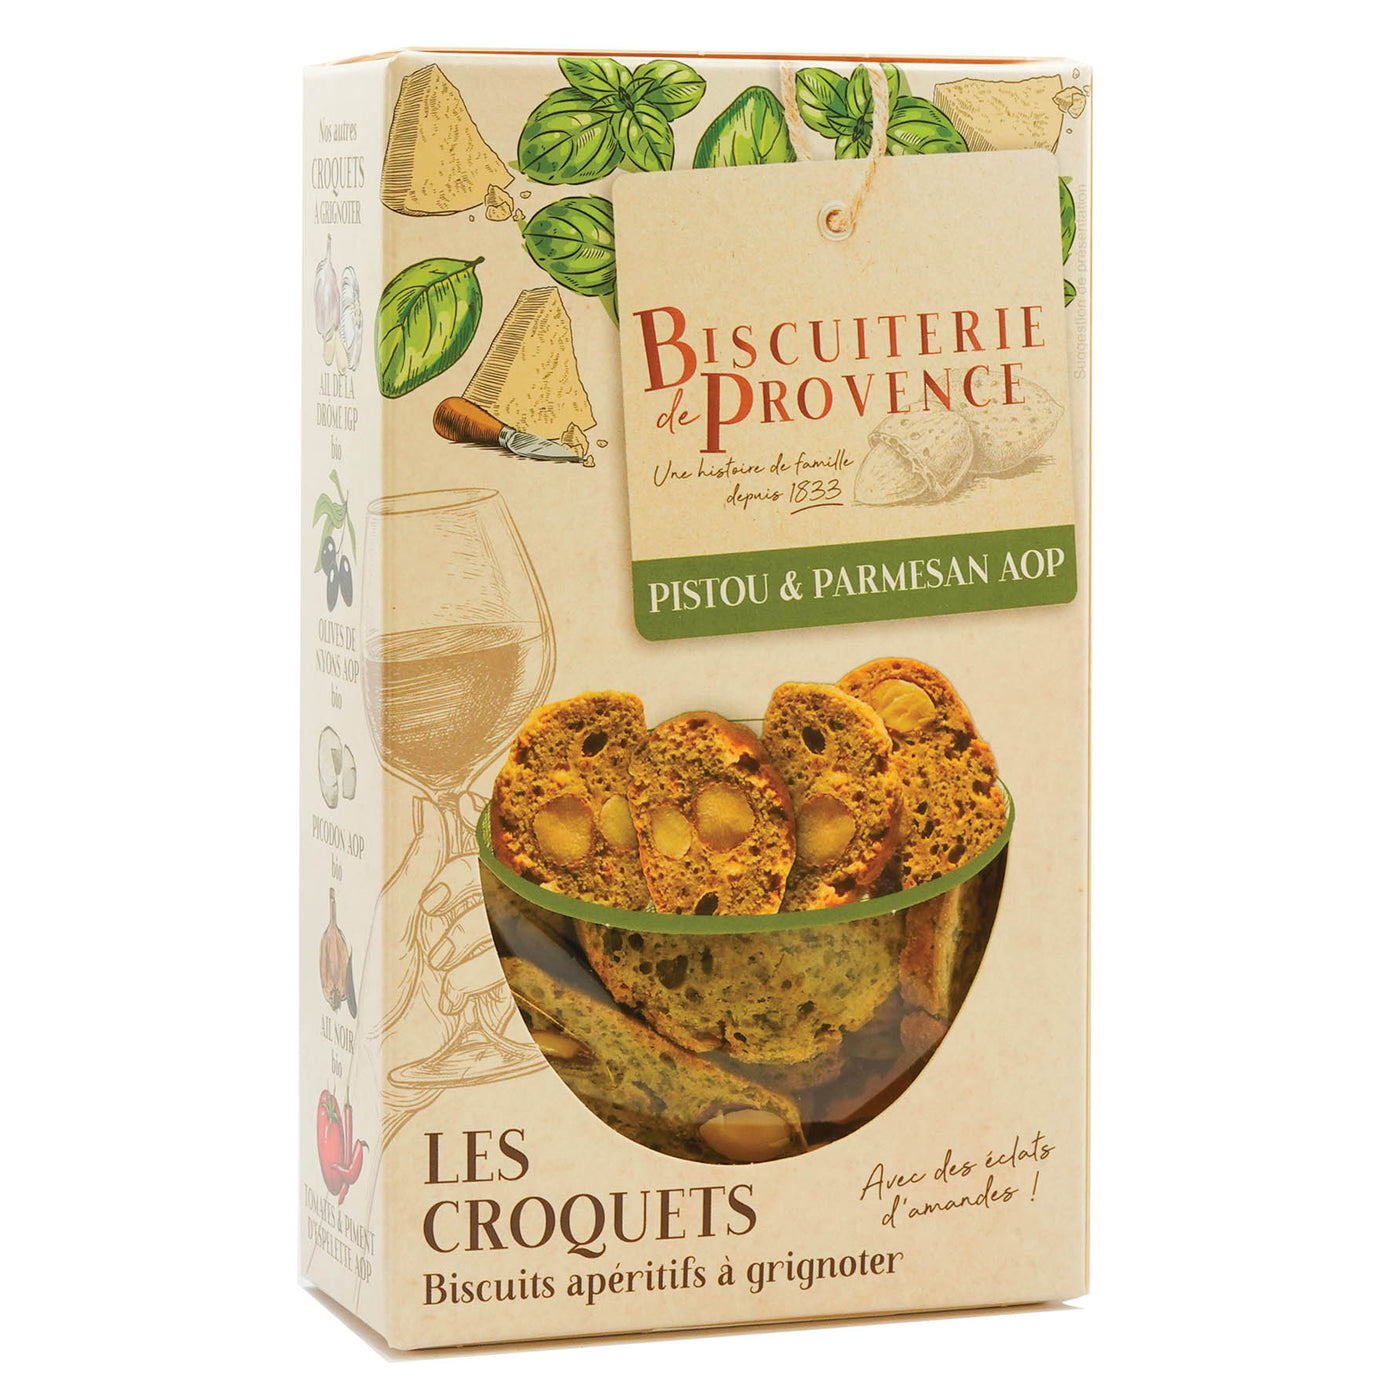 La Biscuiterie de Provence - Croquets Pistou & Parmesan AOP